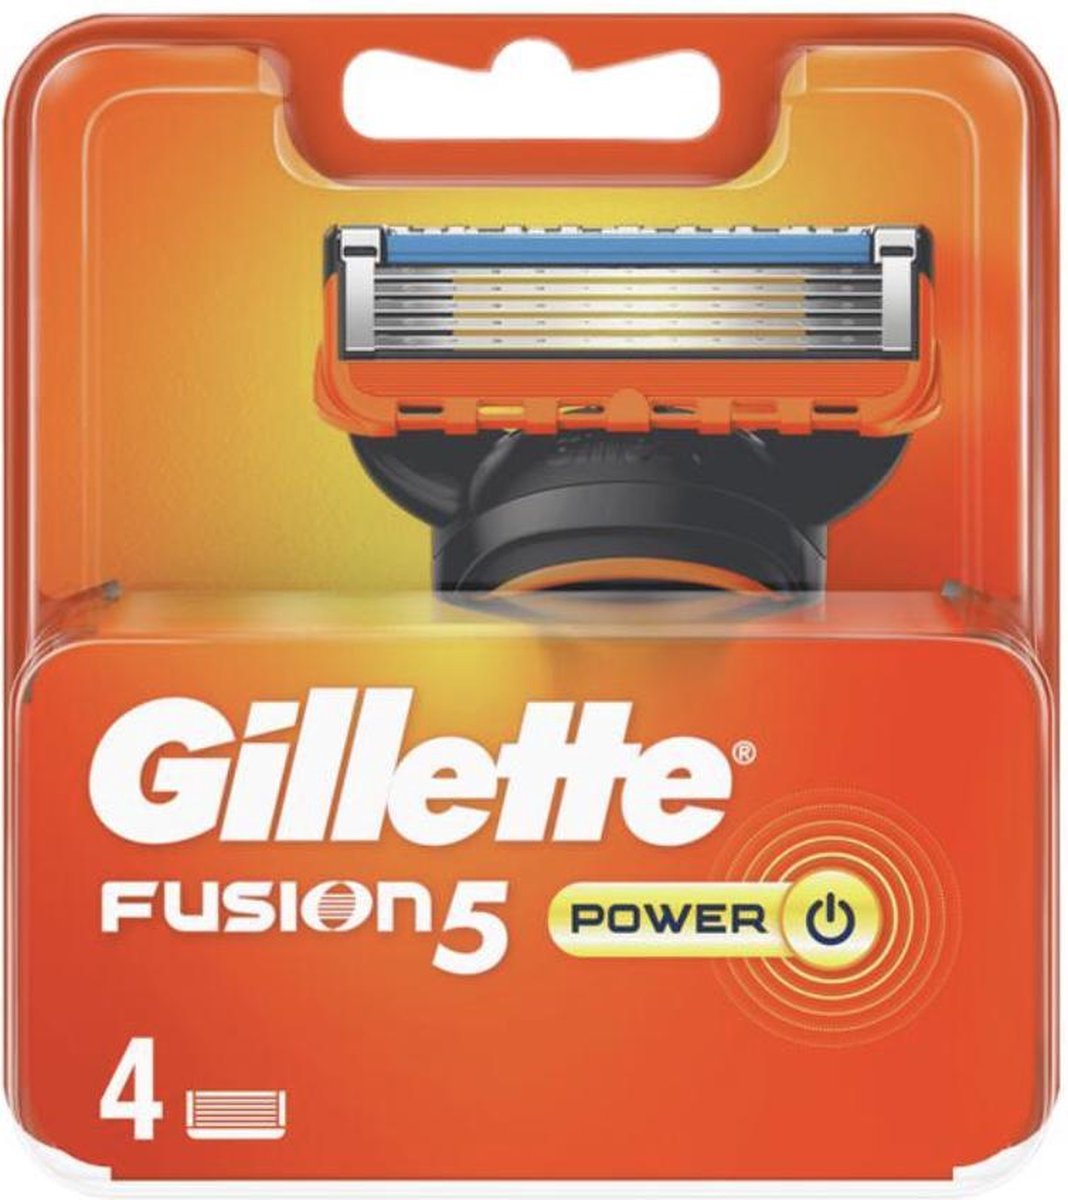 Gillette Fusion 5 Power 4 scheermesjes